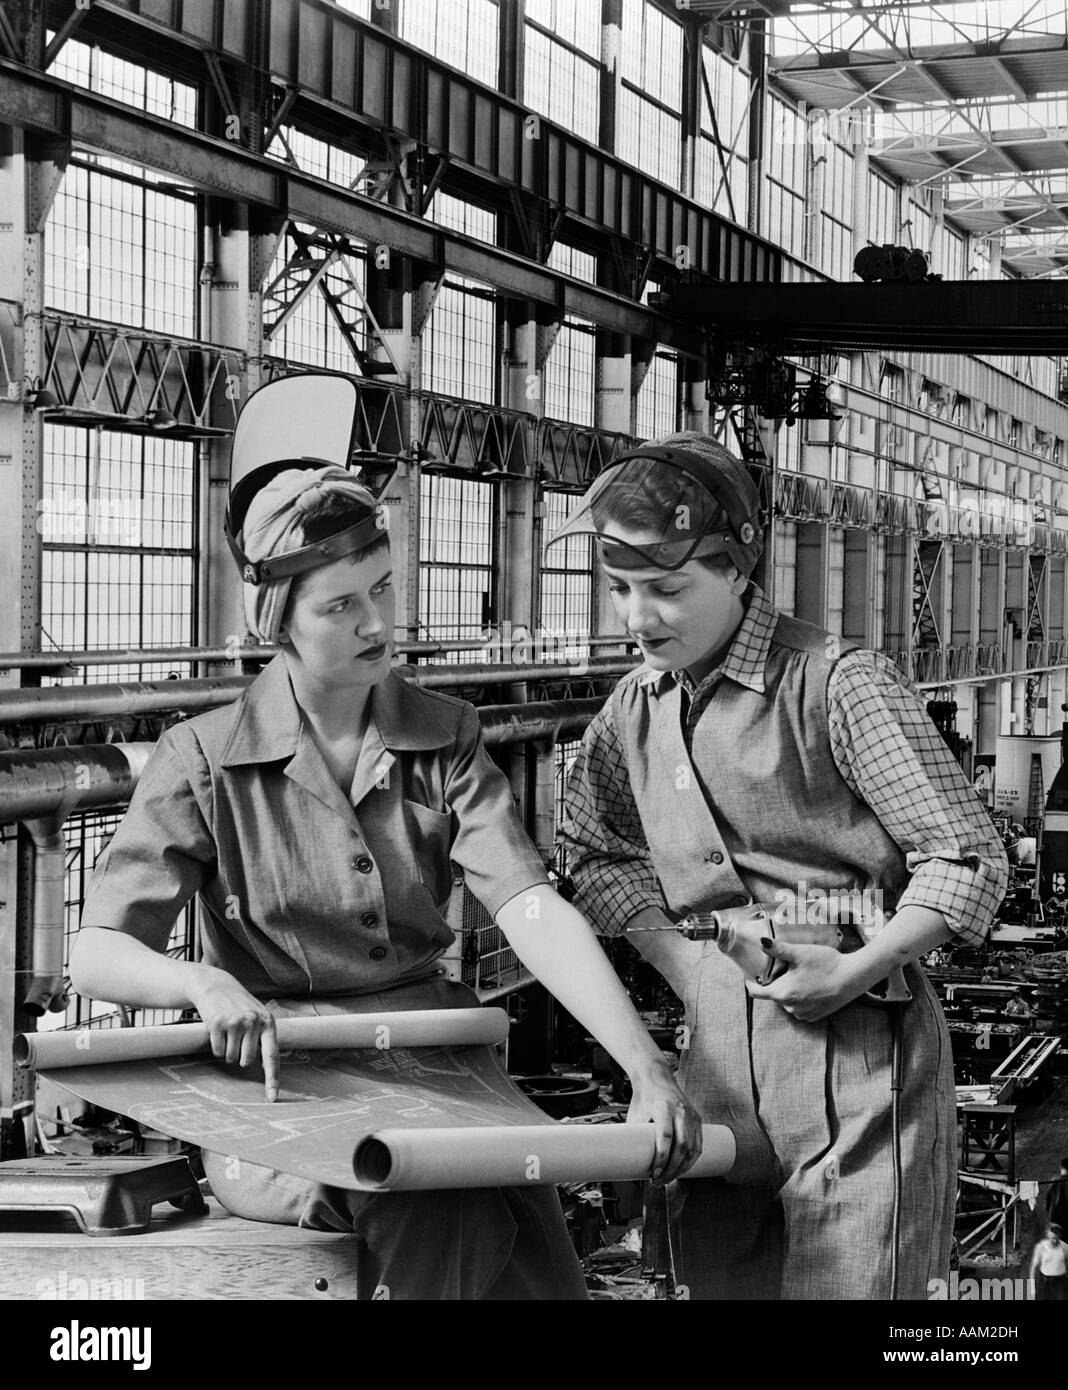 Les travailleurs de l'industrie des années 1940, LES PLANS DE GUERRE DE LA DEUXIÈME GUERRE MONDIALE DES FEMMES FEMME TRAVAILLEUR USINE WORLD WAR 2 WW2 Banque D'Images